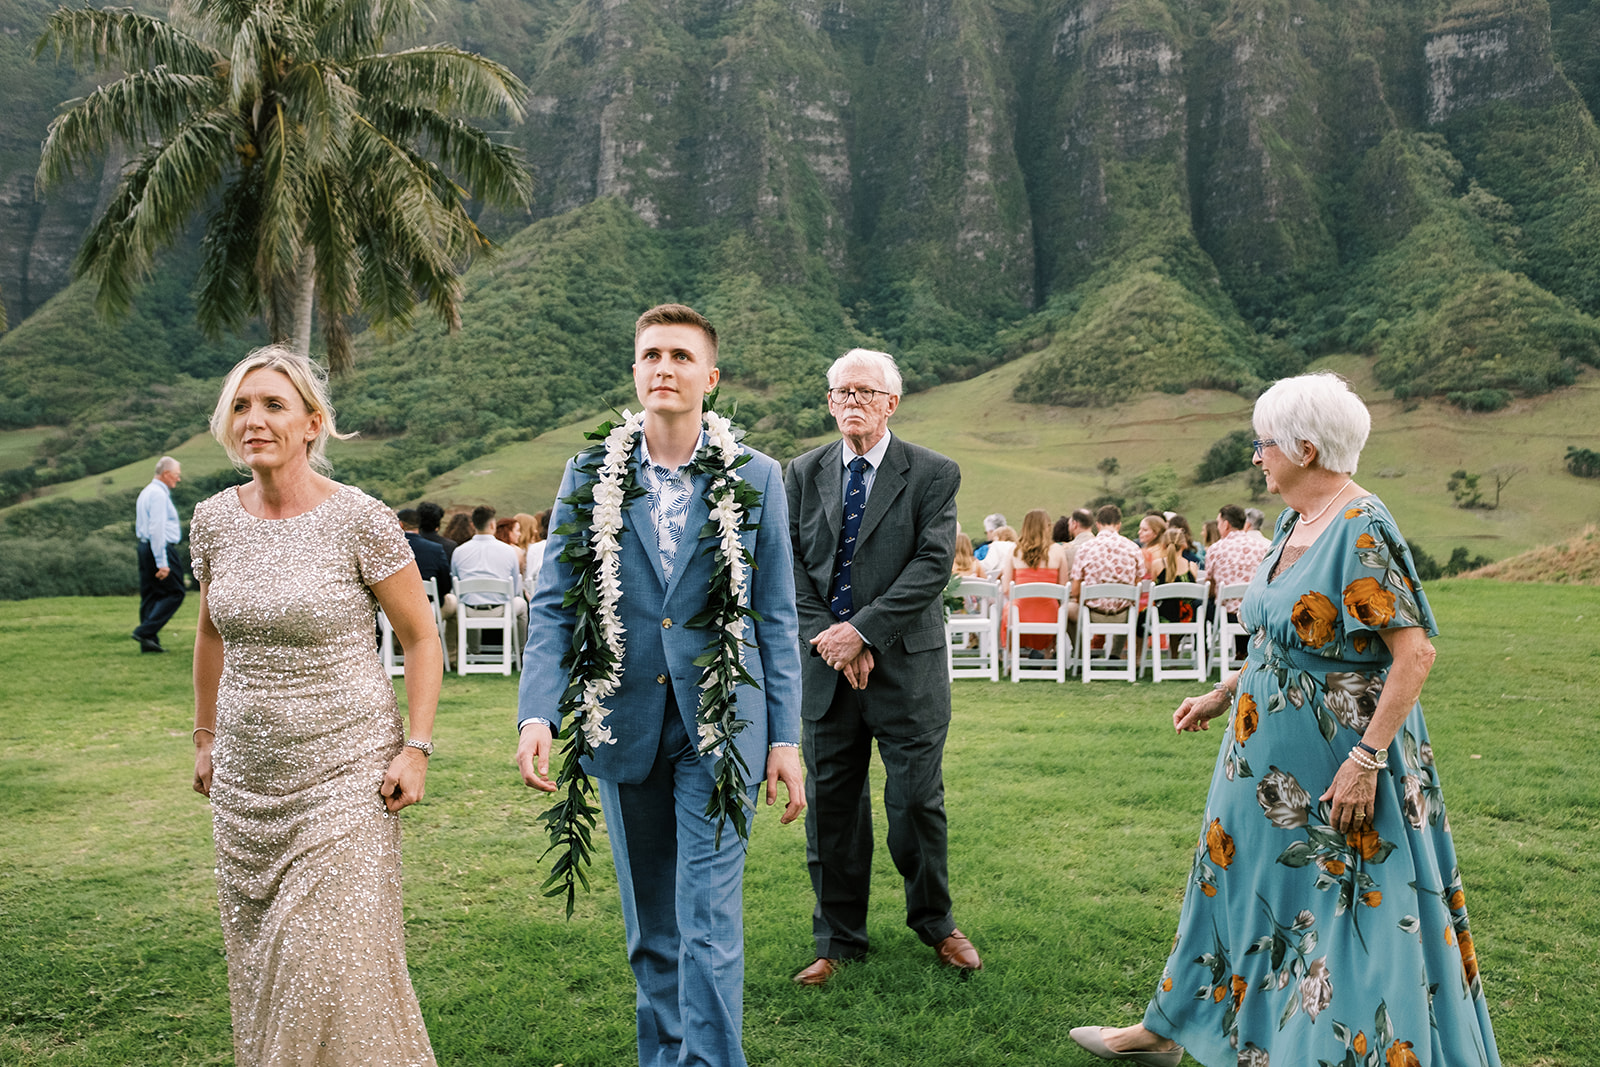 Groom walking down the aisle at a Hawaiian wedding.